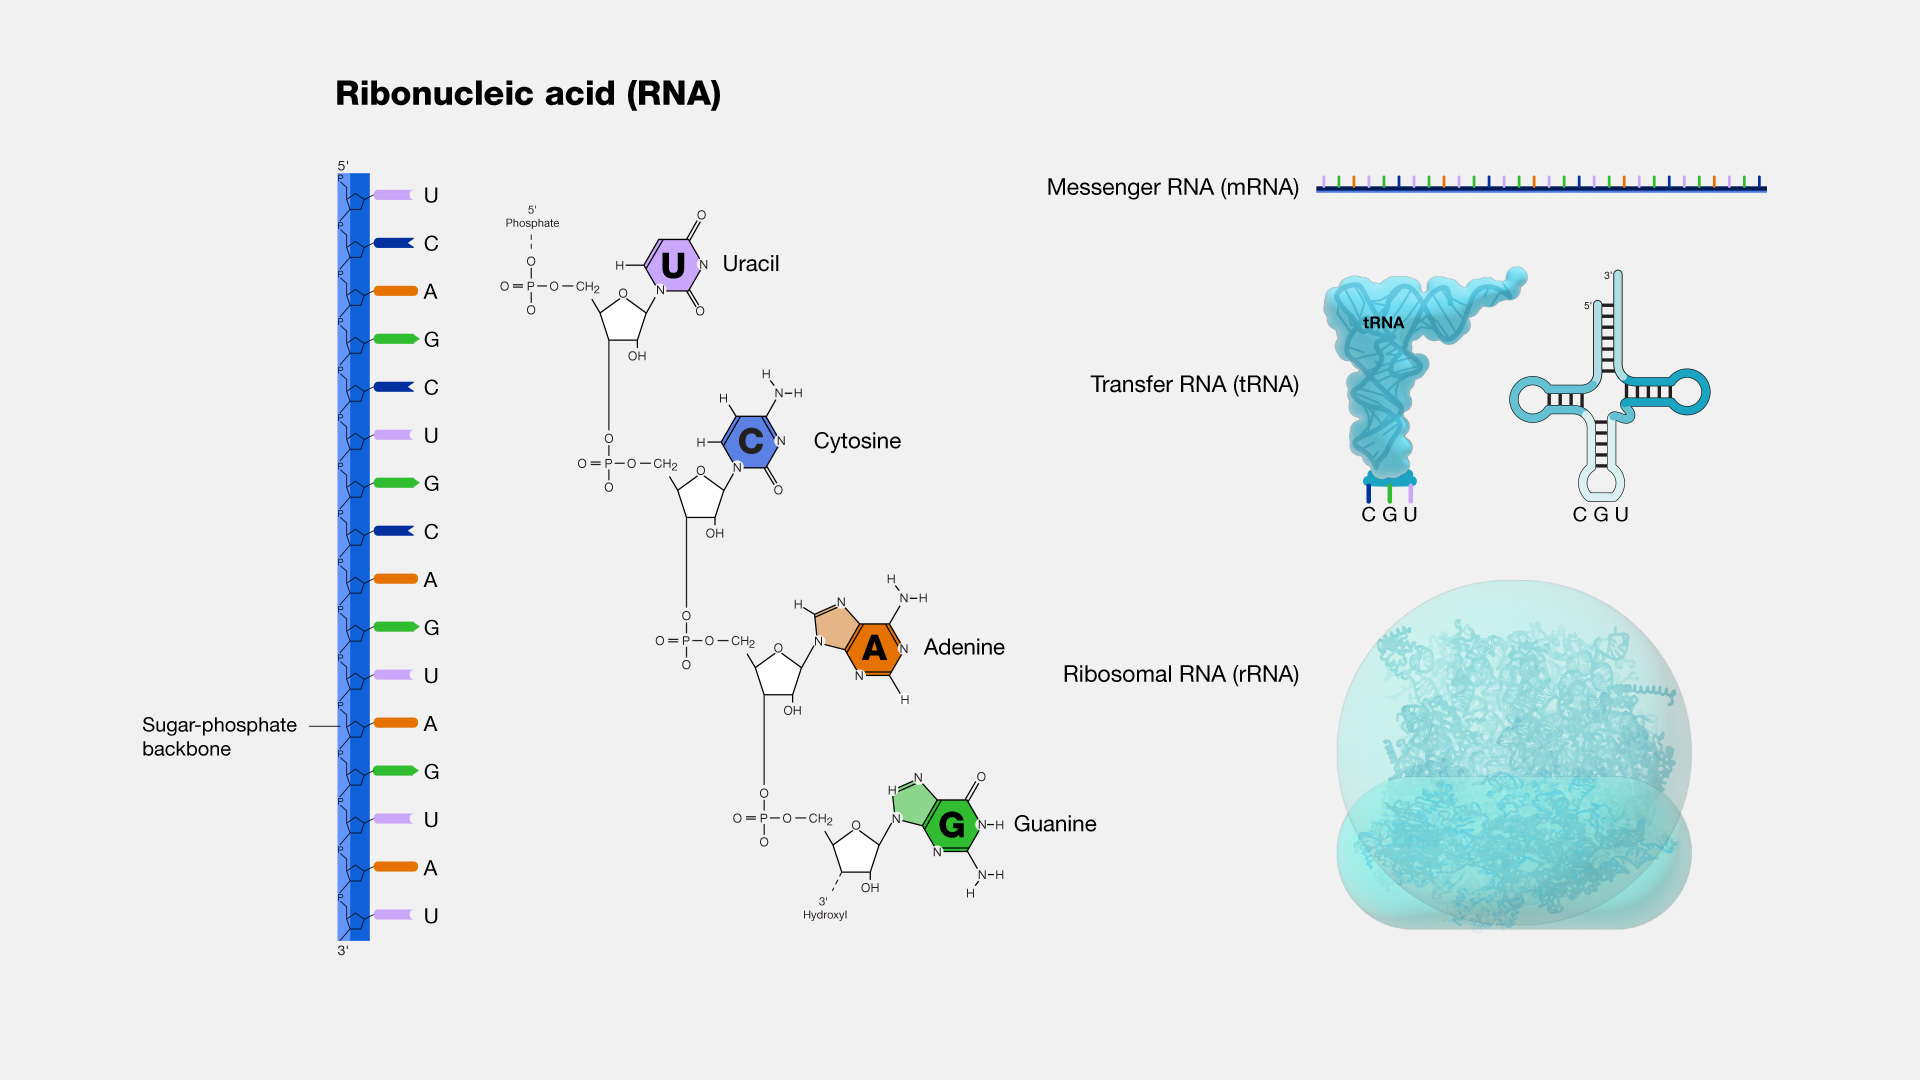 Рибонуклеиновая кислота (сокращенно РНК) представляет собой нуклеиновую кислоту, присутствующую во всех живых клетках и имеющую структурное сходство с ДНК